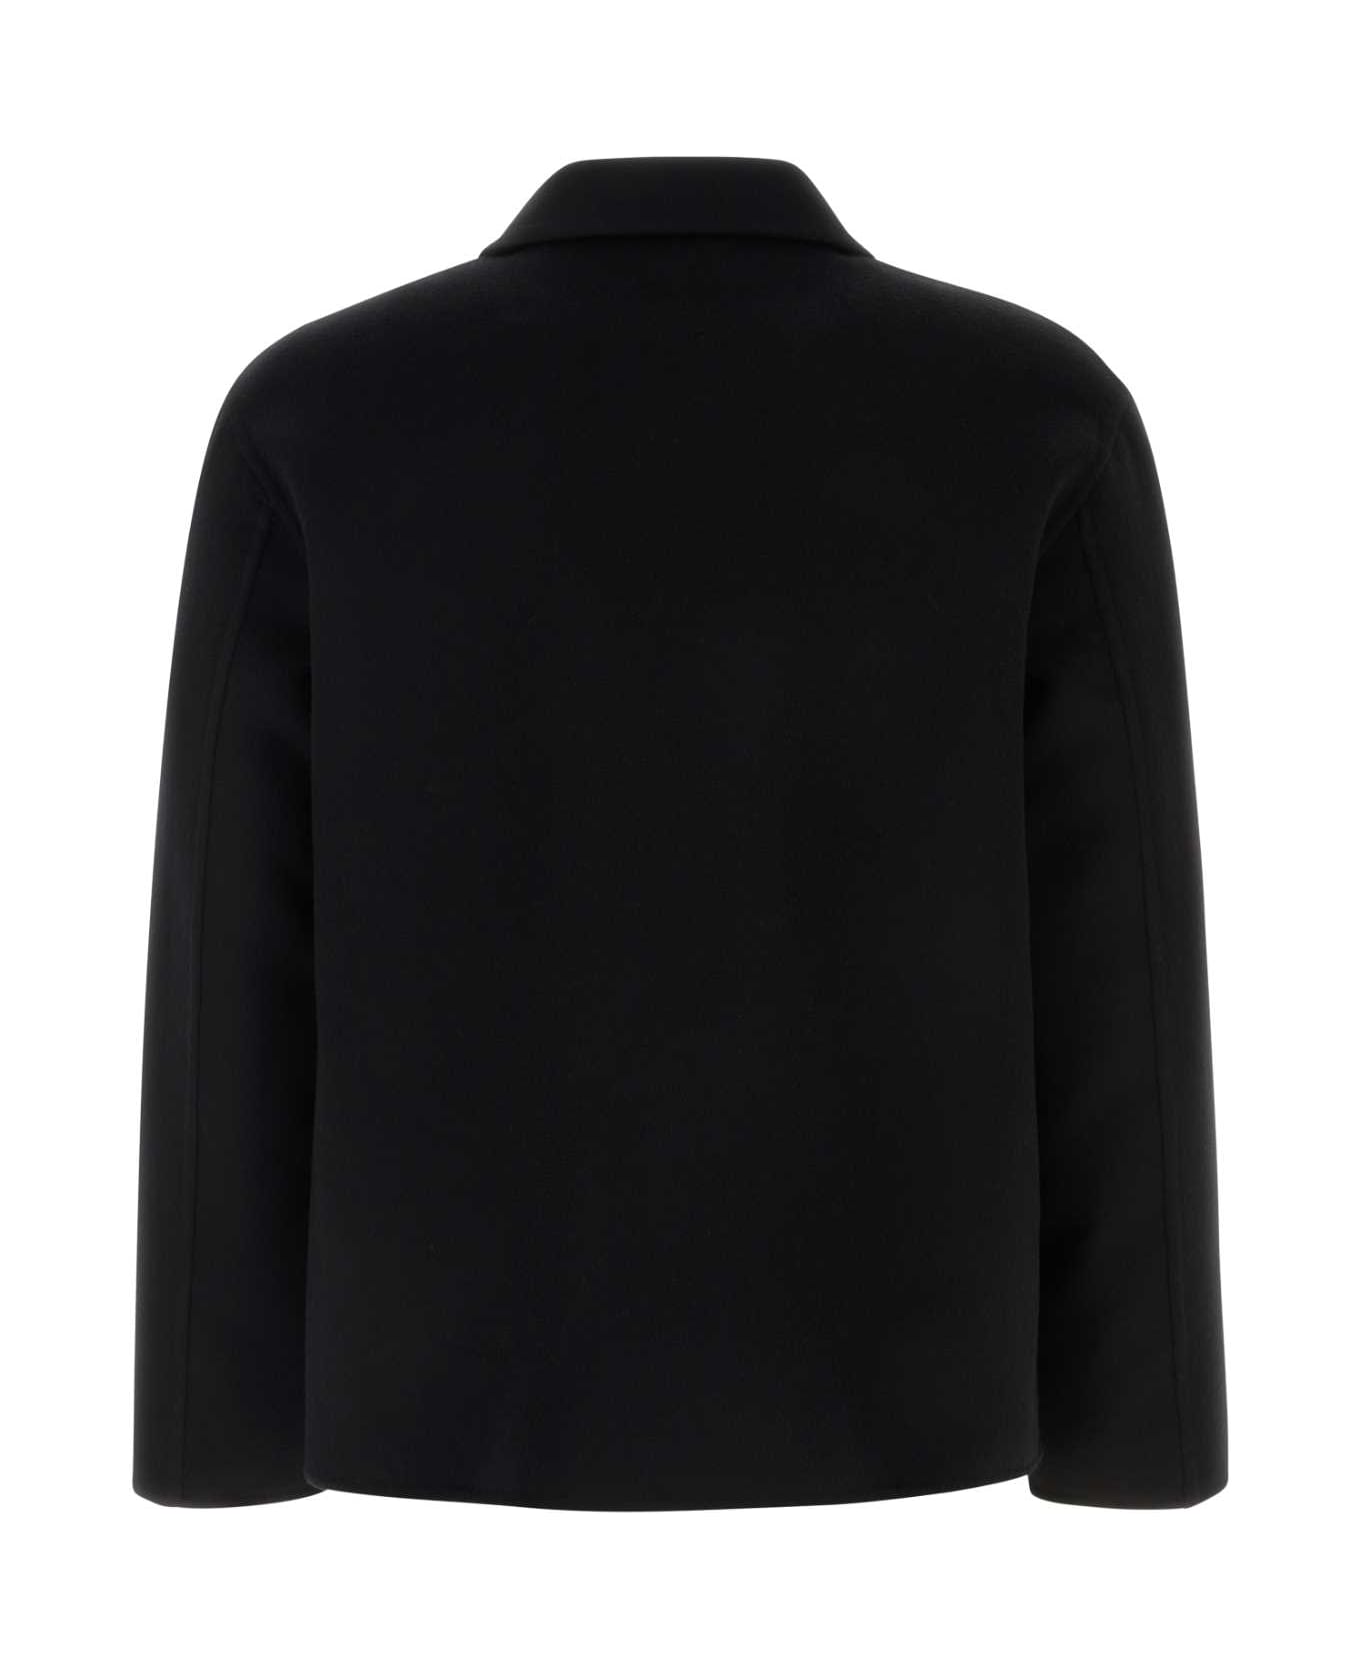 Loewe Black Wool Blend Jacket - BLACK